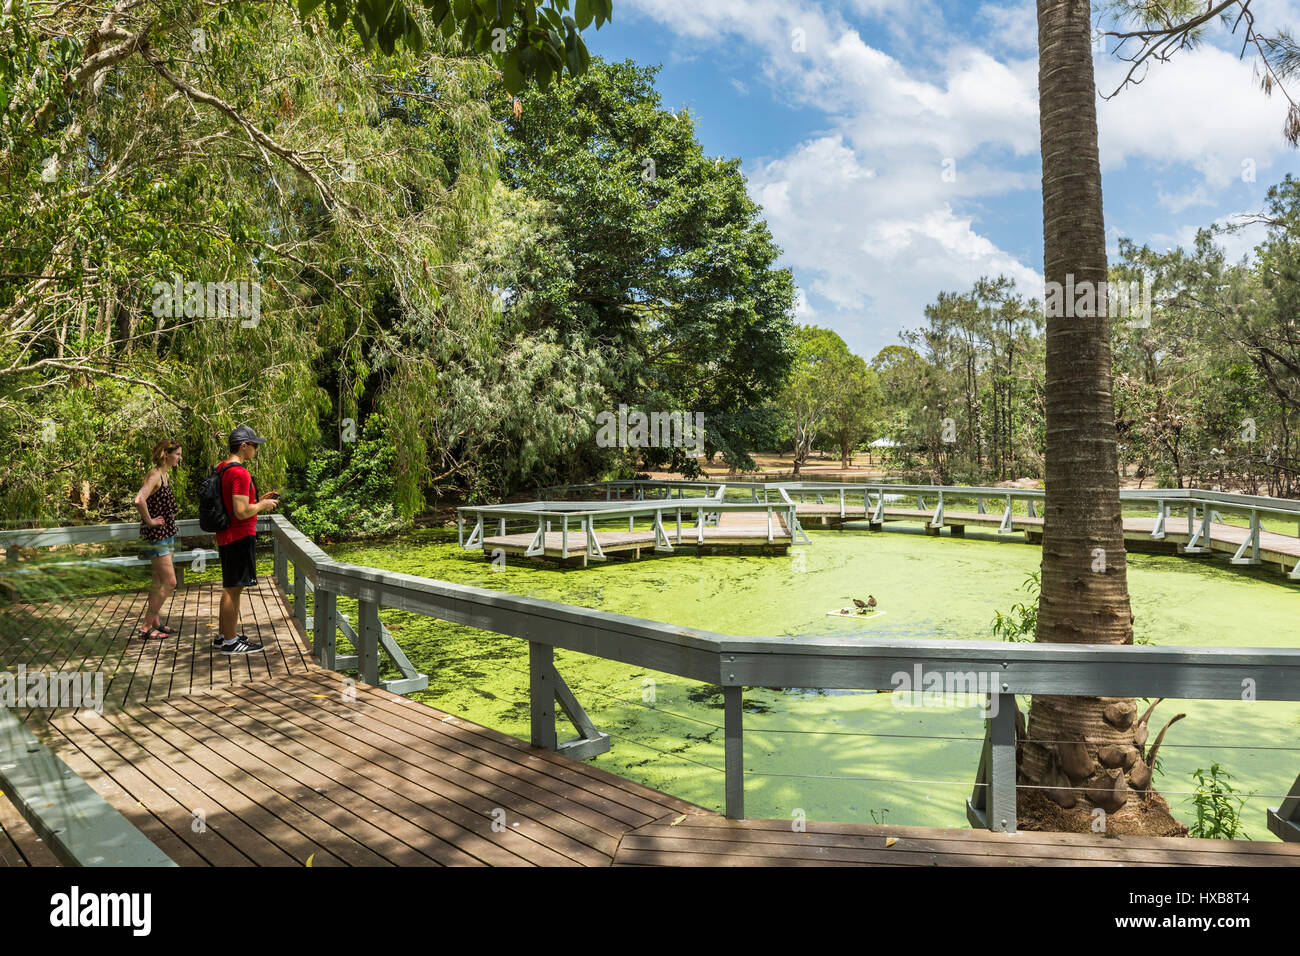 Les visiteurs à la découverte d'une promenade surplombant les lacs des jardins botaniques, Bundaberg Bundaberg, Queensland, Australie Banque D'Images